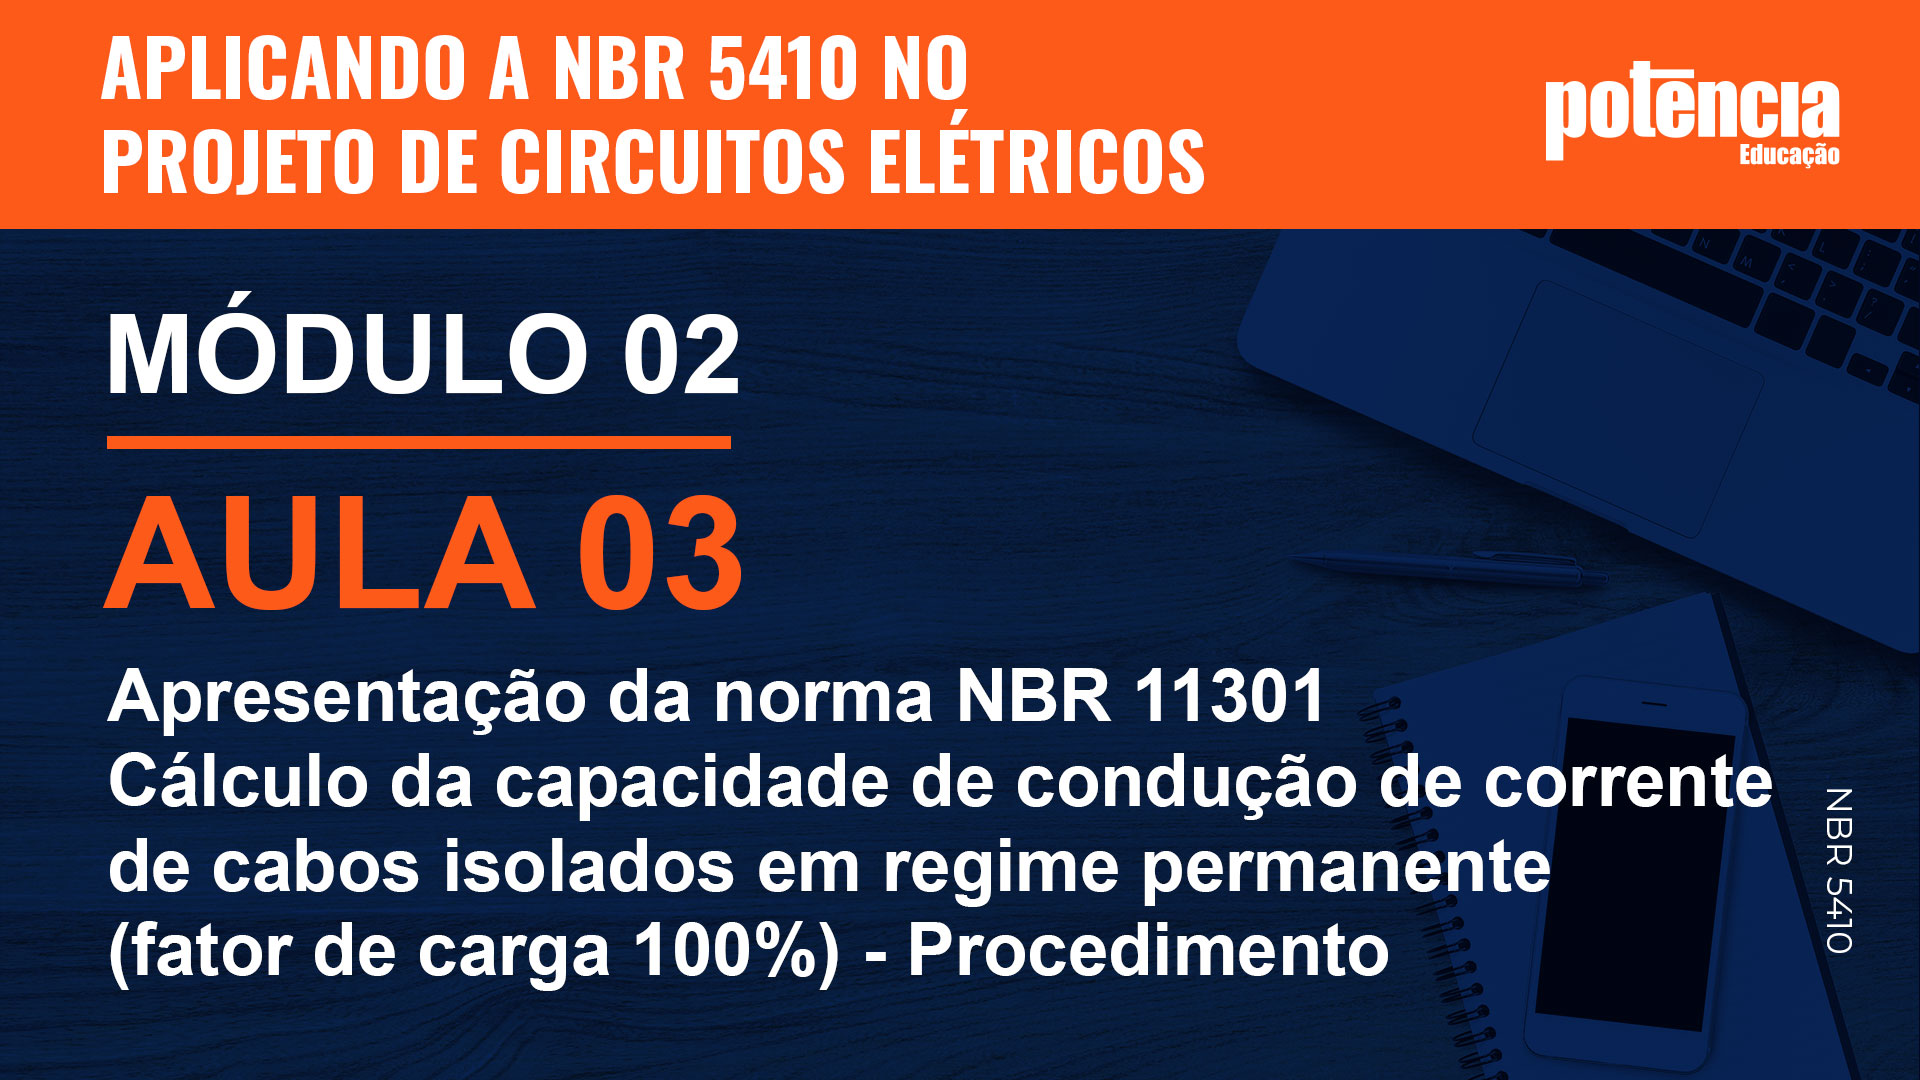 3 - Apresentação da norma NBR 11301 - Cálculo da capacidade de condução de corrente de cabos isolados em regime permanente (fator de carga 100%) - Procedimento